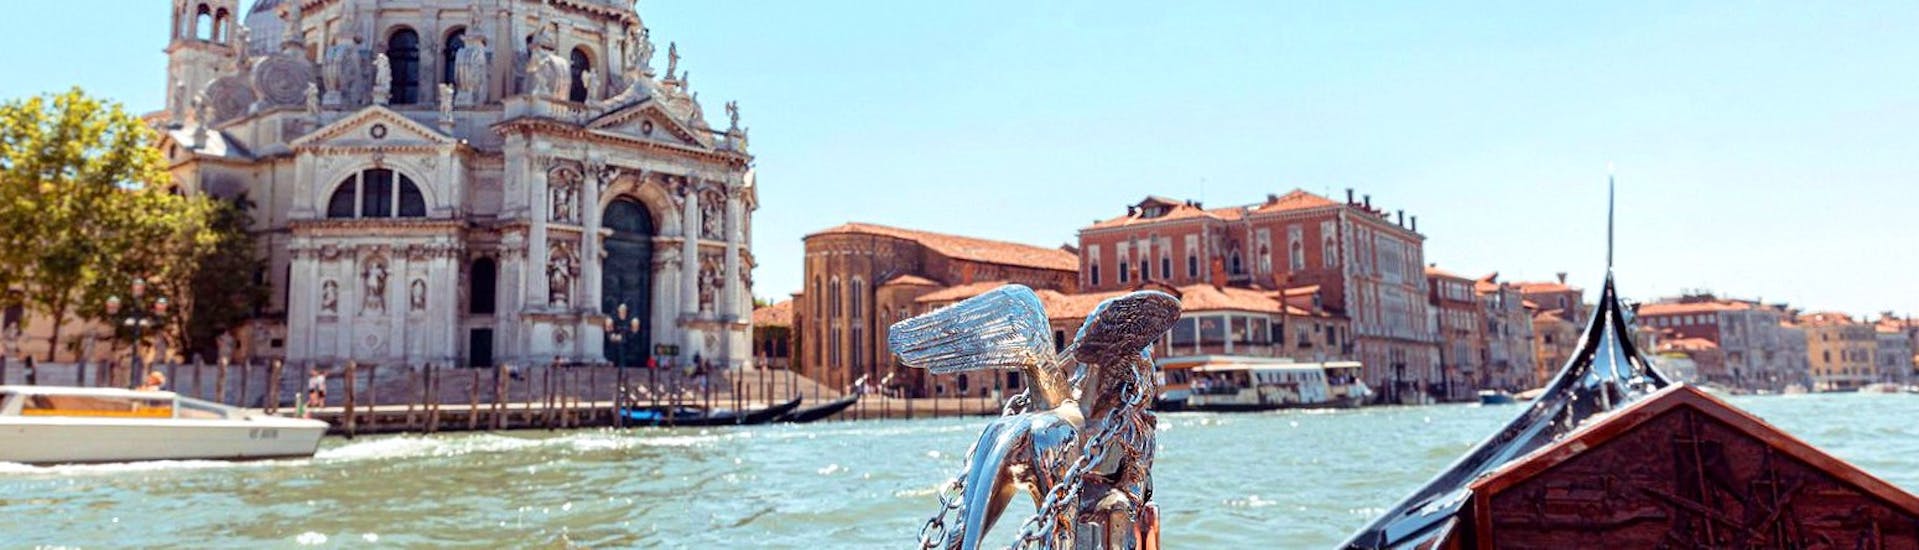 Vue de la Basilique della Salute depuis la gondole lors du Tour privé en gondole le long du Grand Canal avec Prosecco avec Agenzia Gondolieri Travel Venezia.